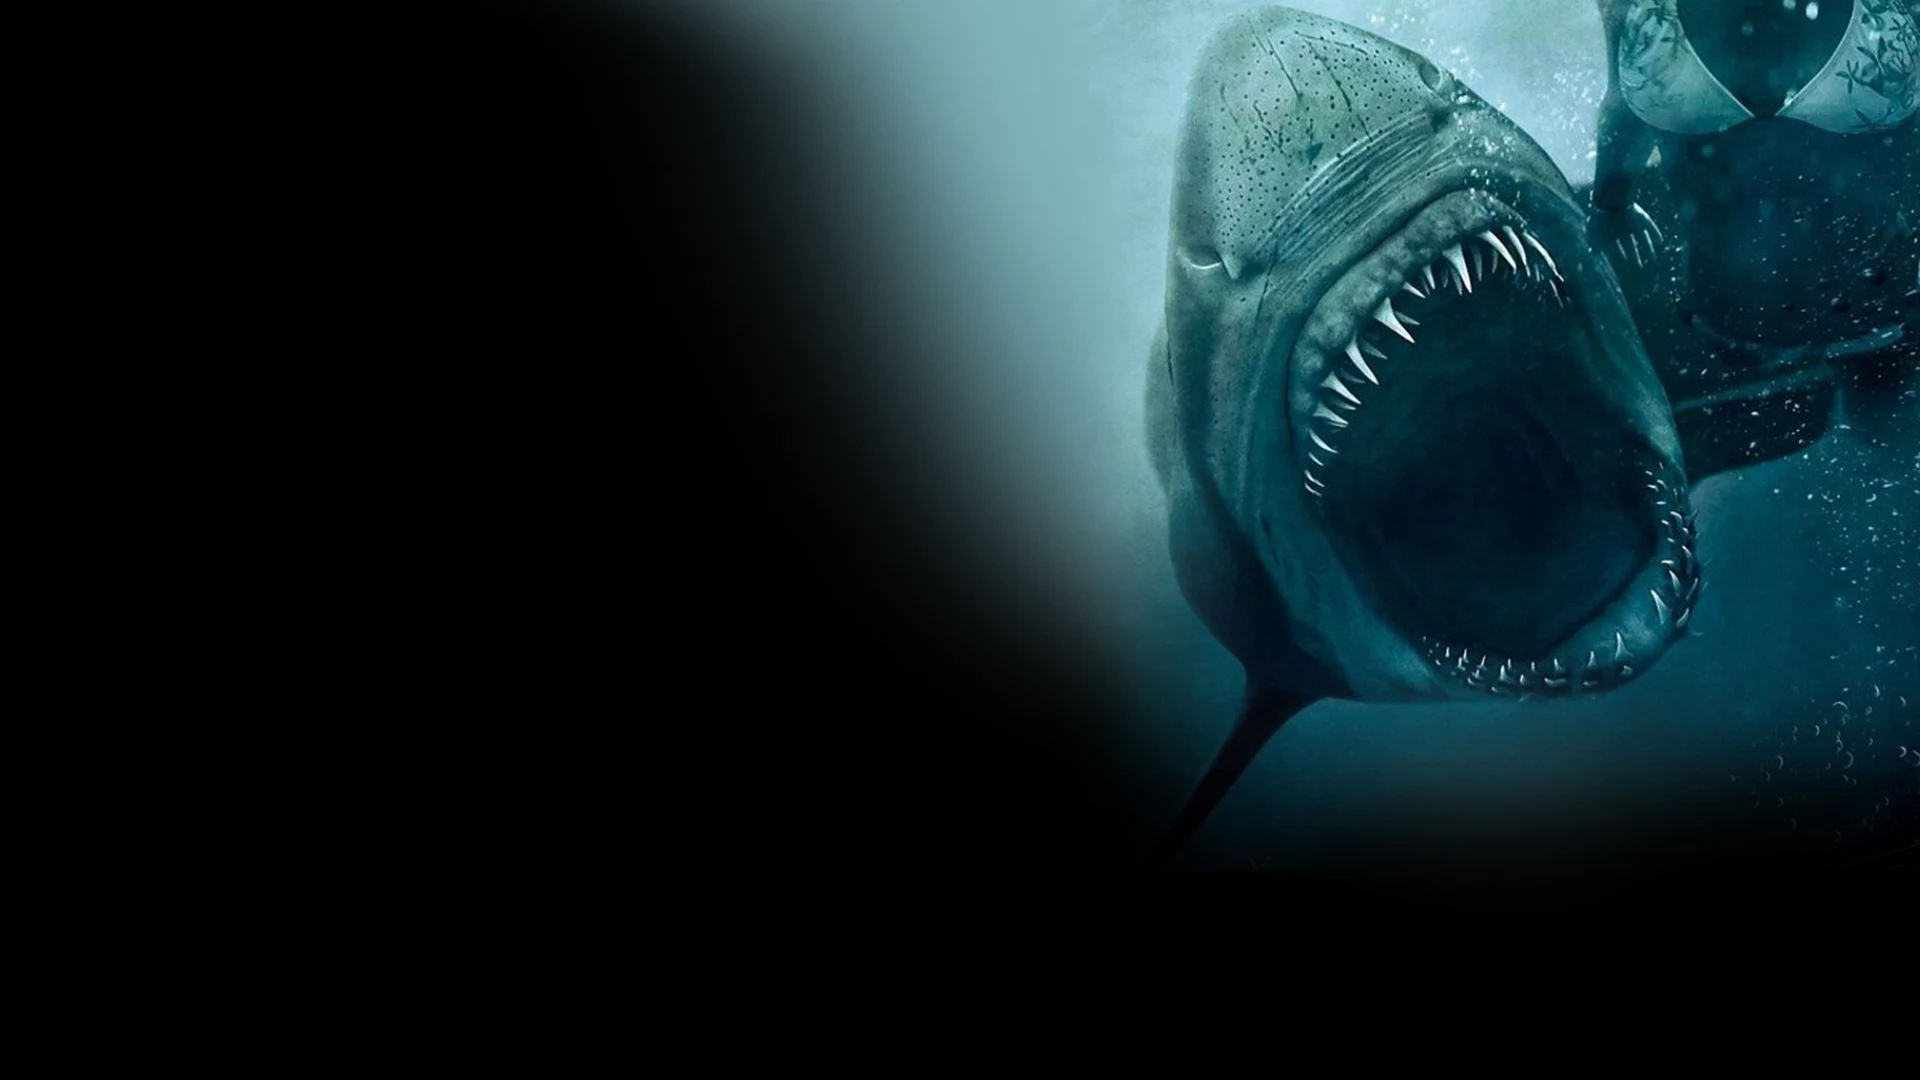 Shark Night - Il lago del terrore